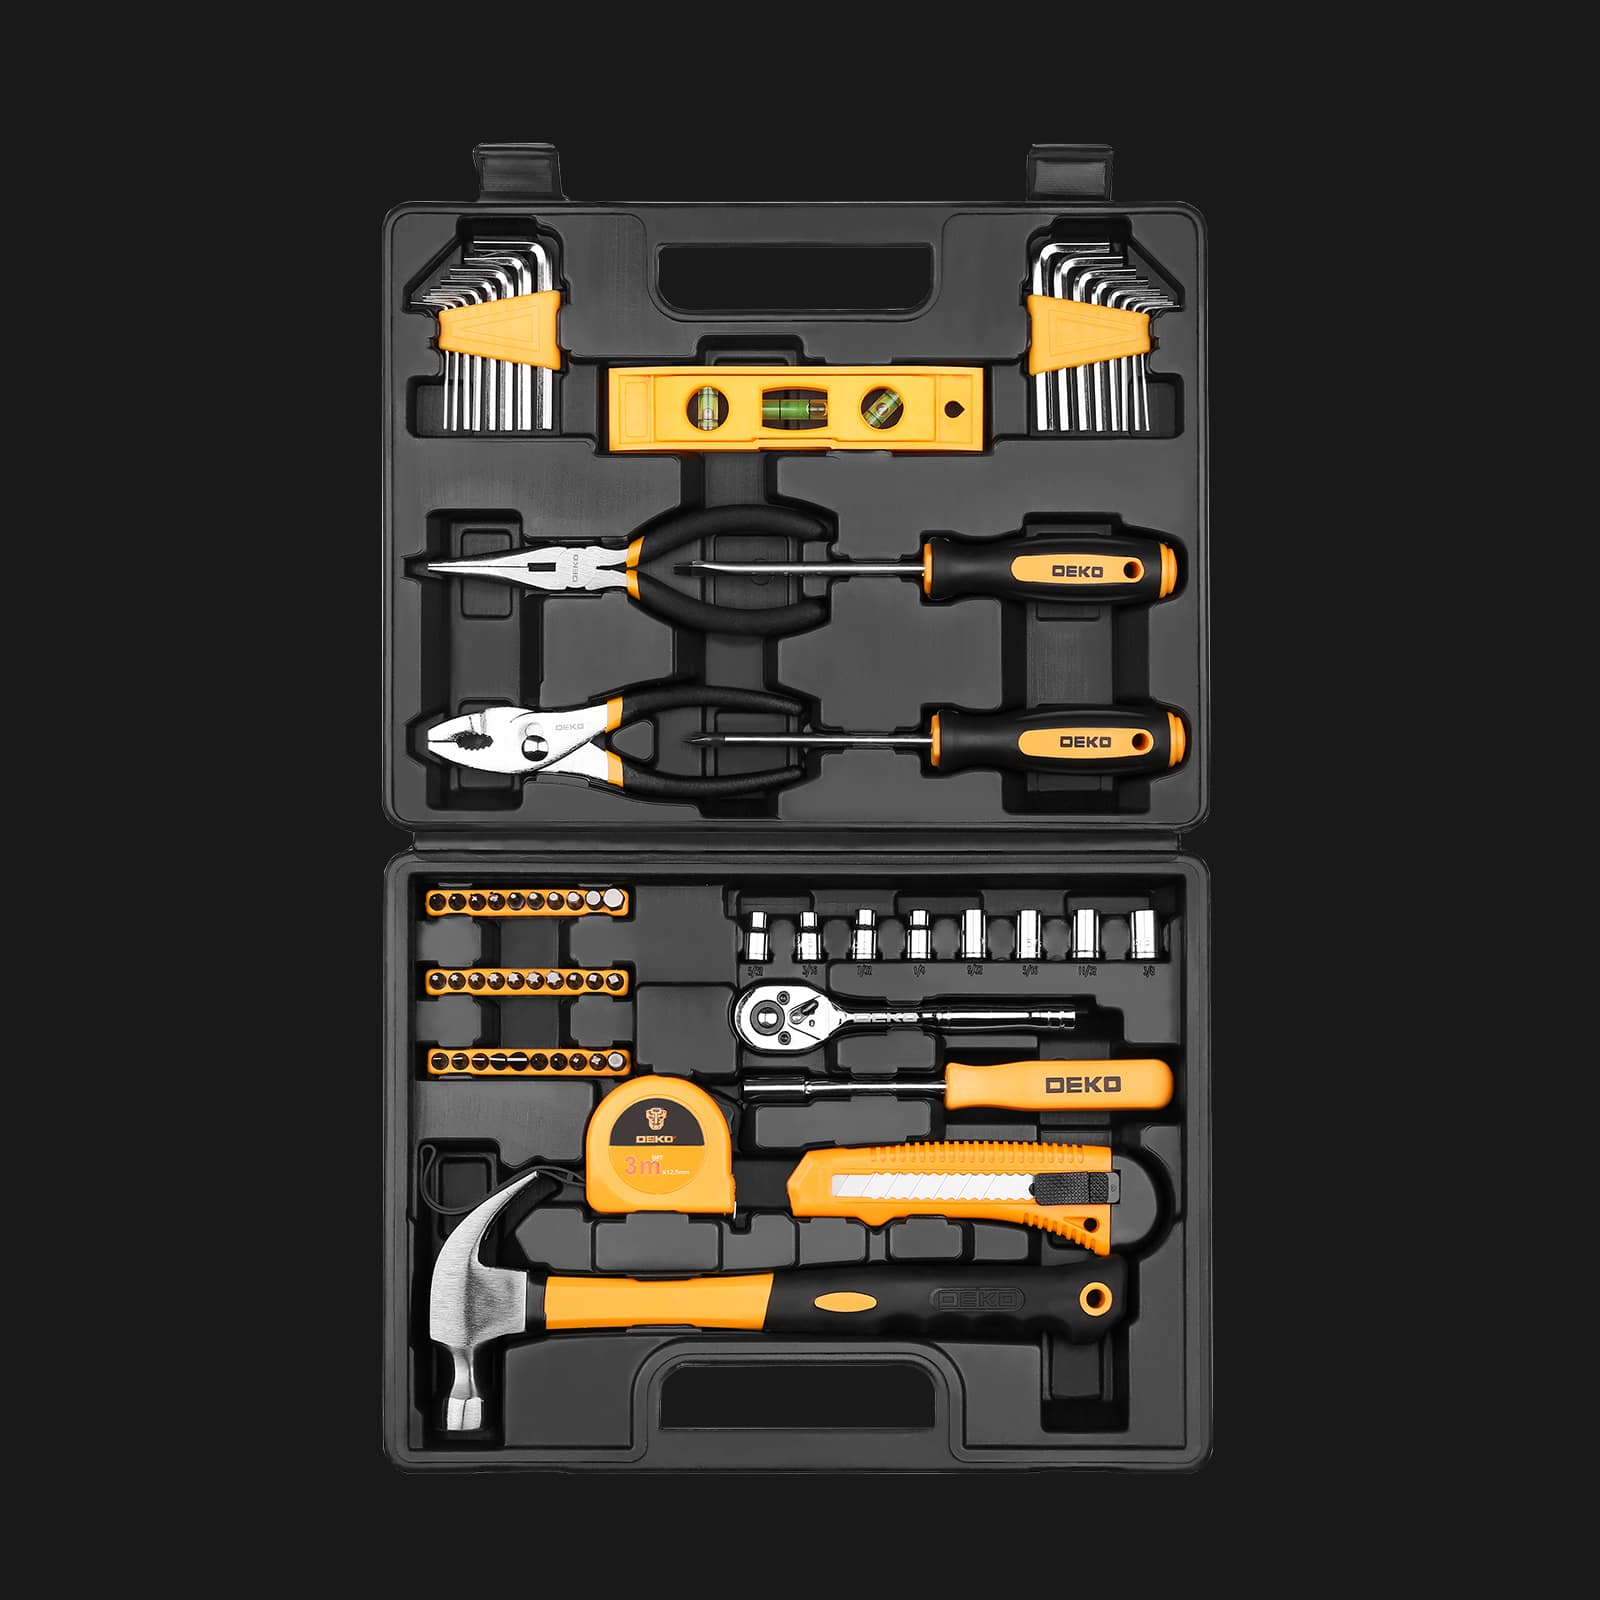 Mini kit de herramientas multiusos para el hogar con herramientas básicas de 65 piezas